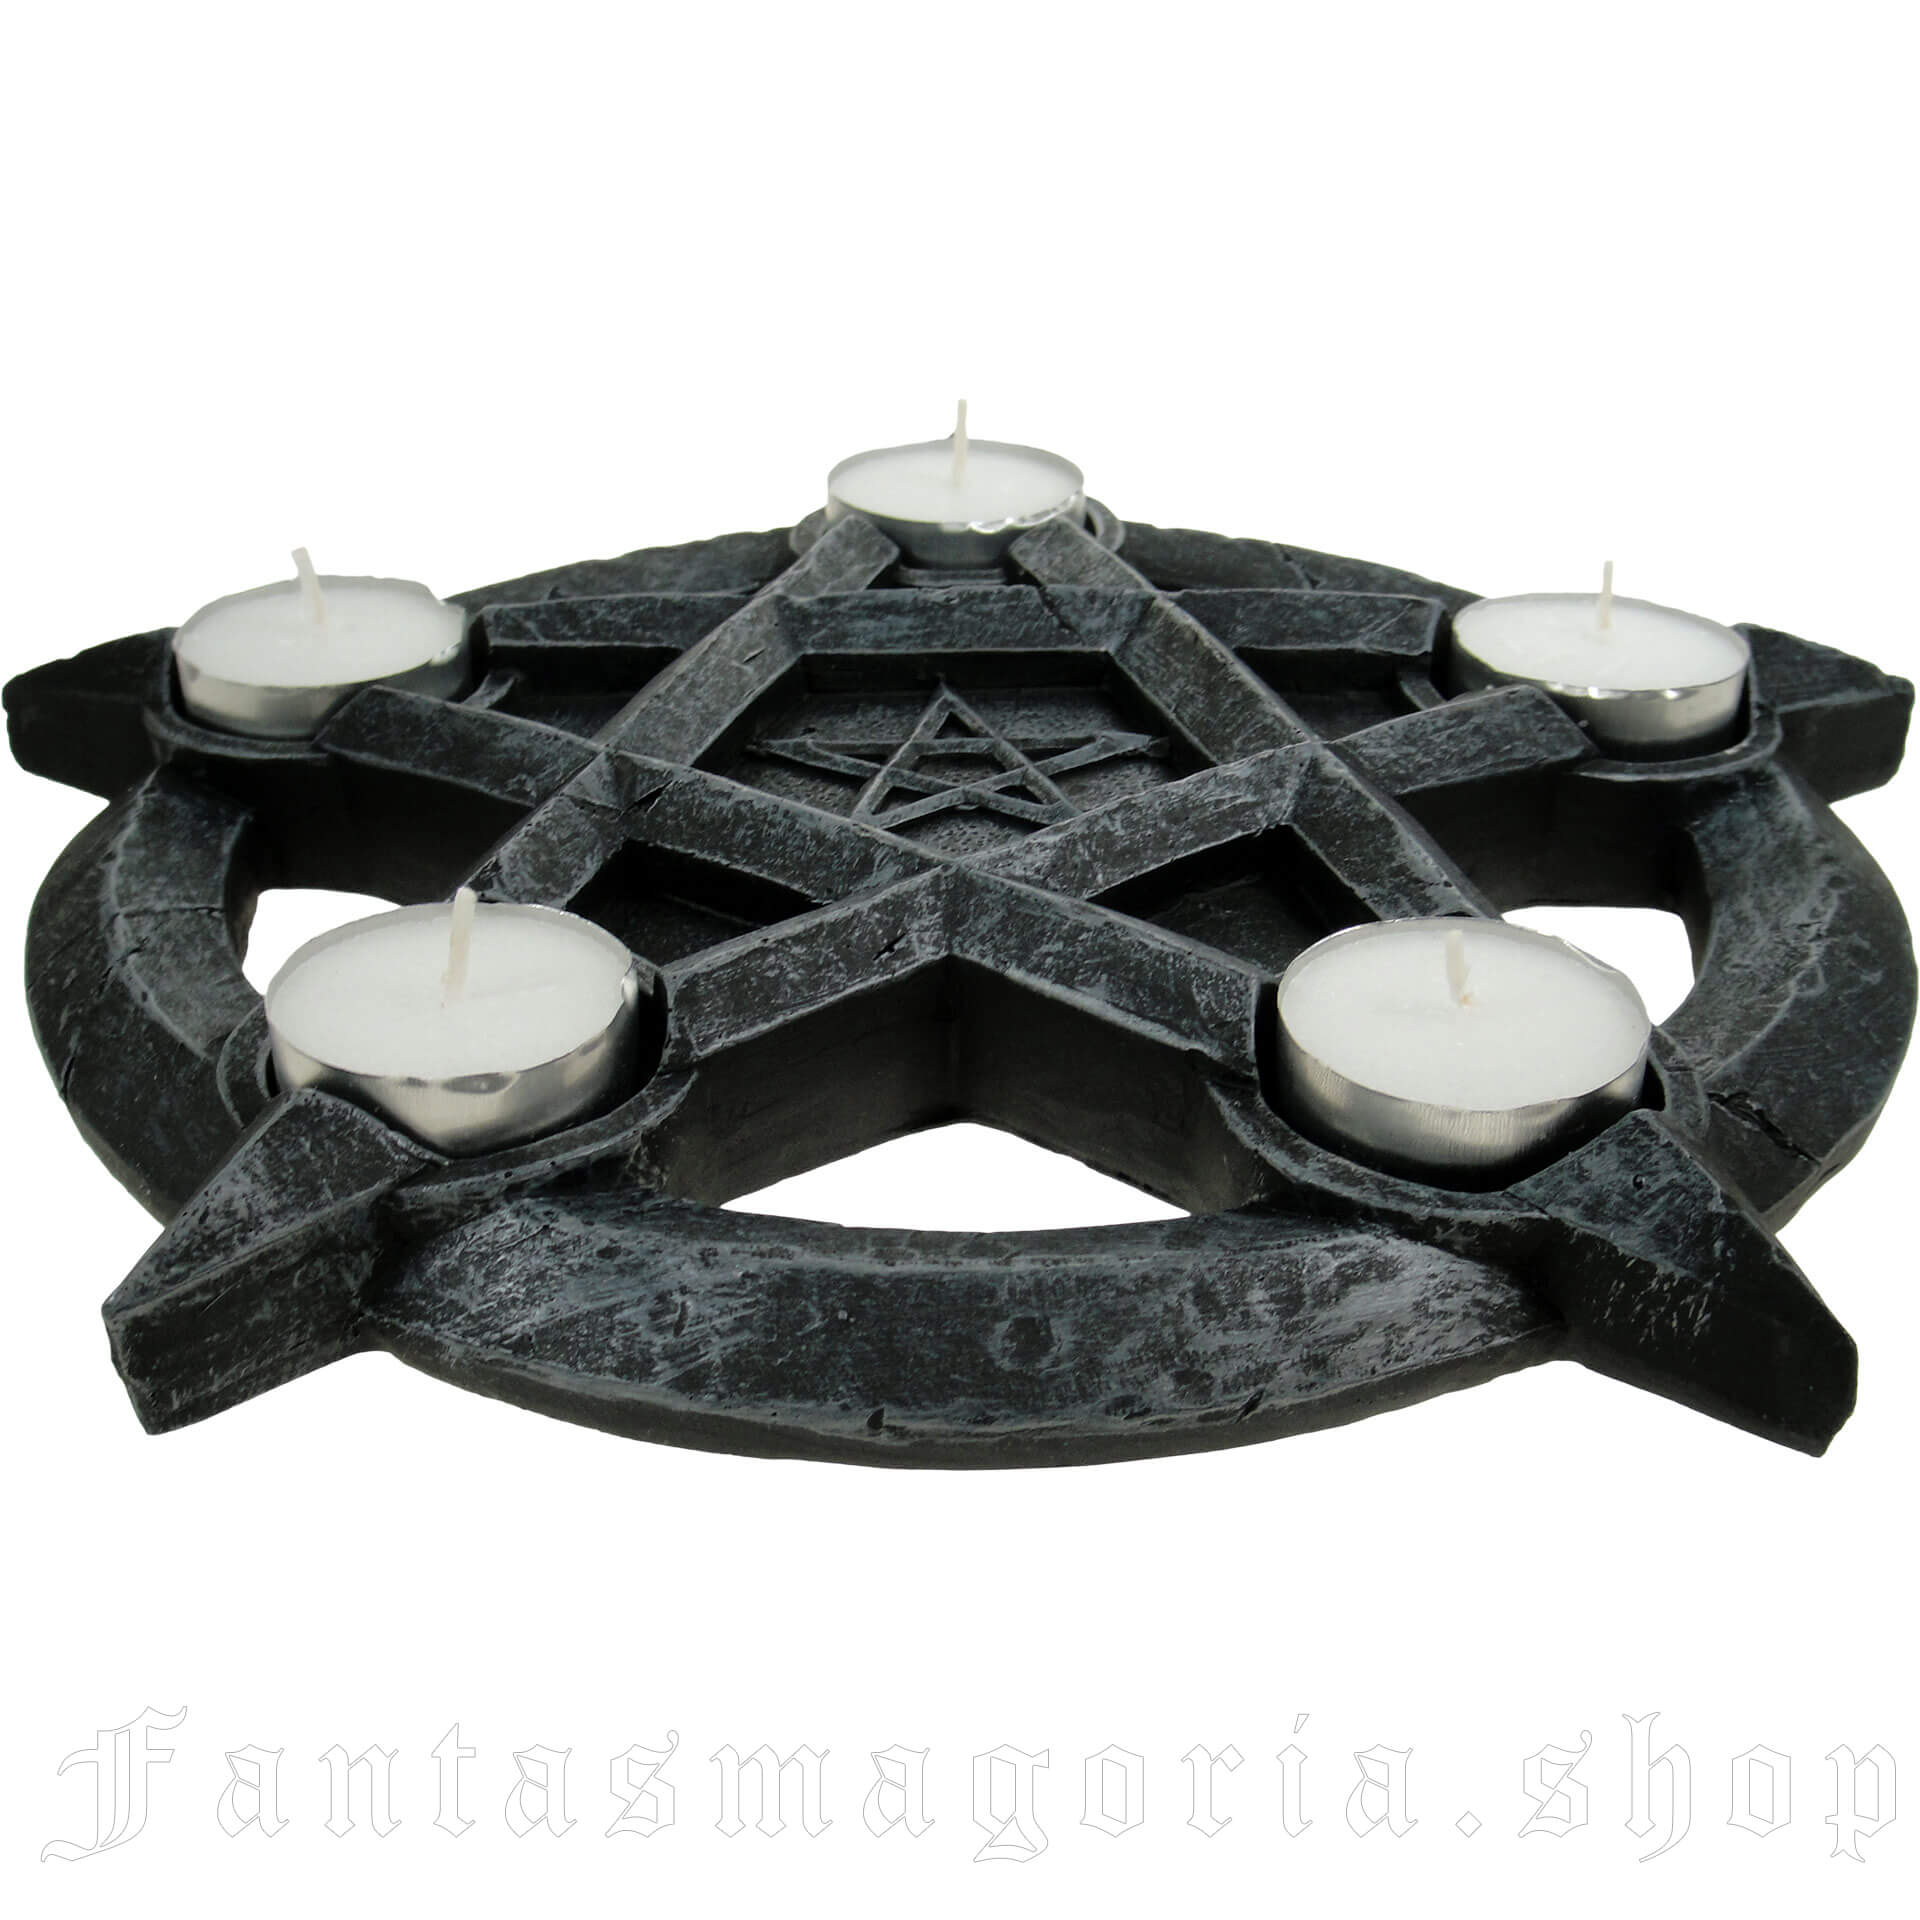 Pentagram Medium Candlestick Holder - Killstar